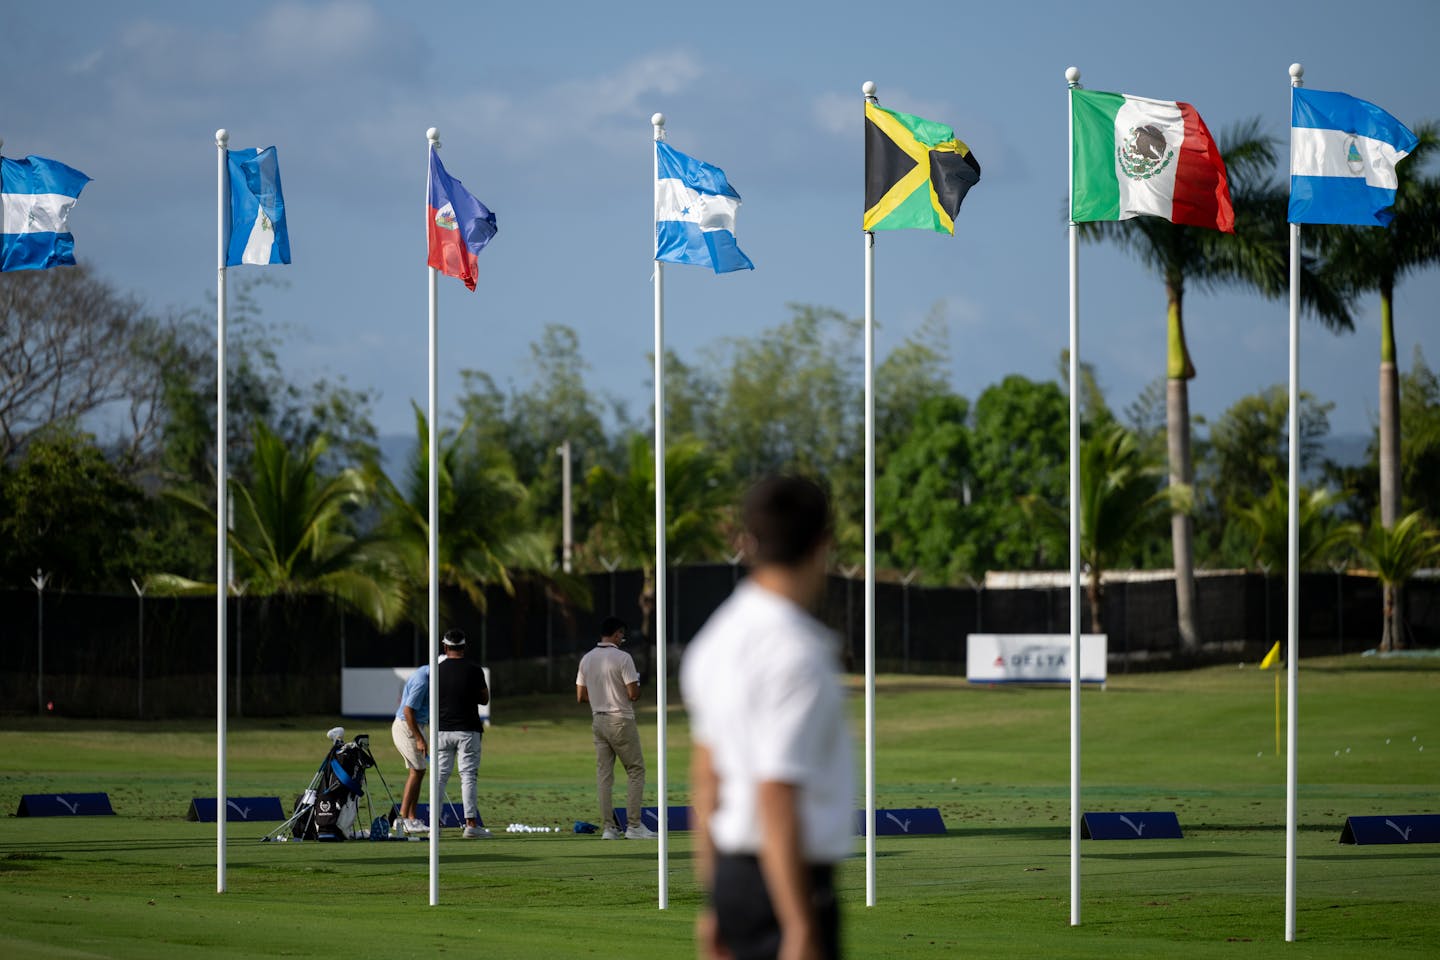 Las banderas ondean con la brisa mientras los golfistas juegan en el campo de práctica.